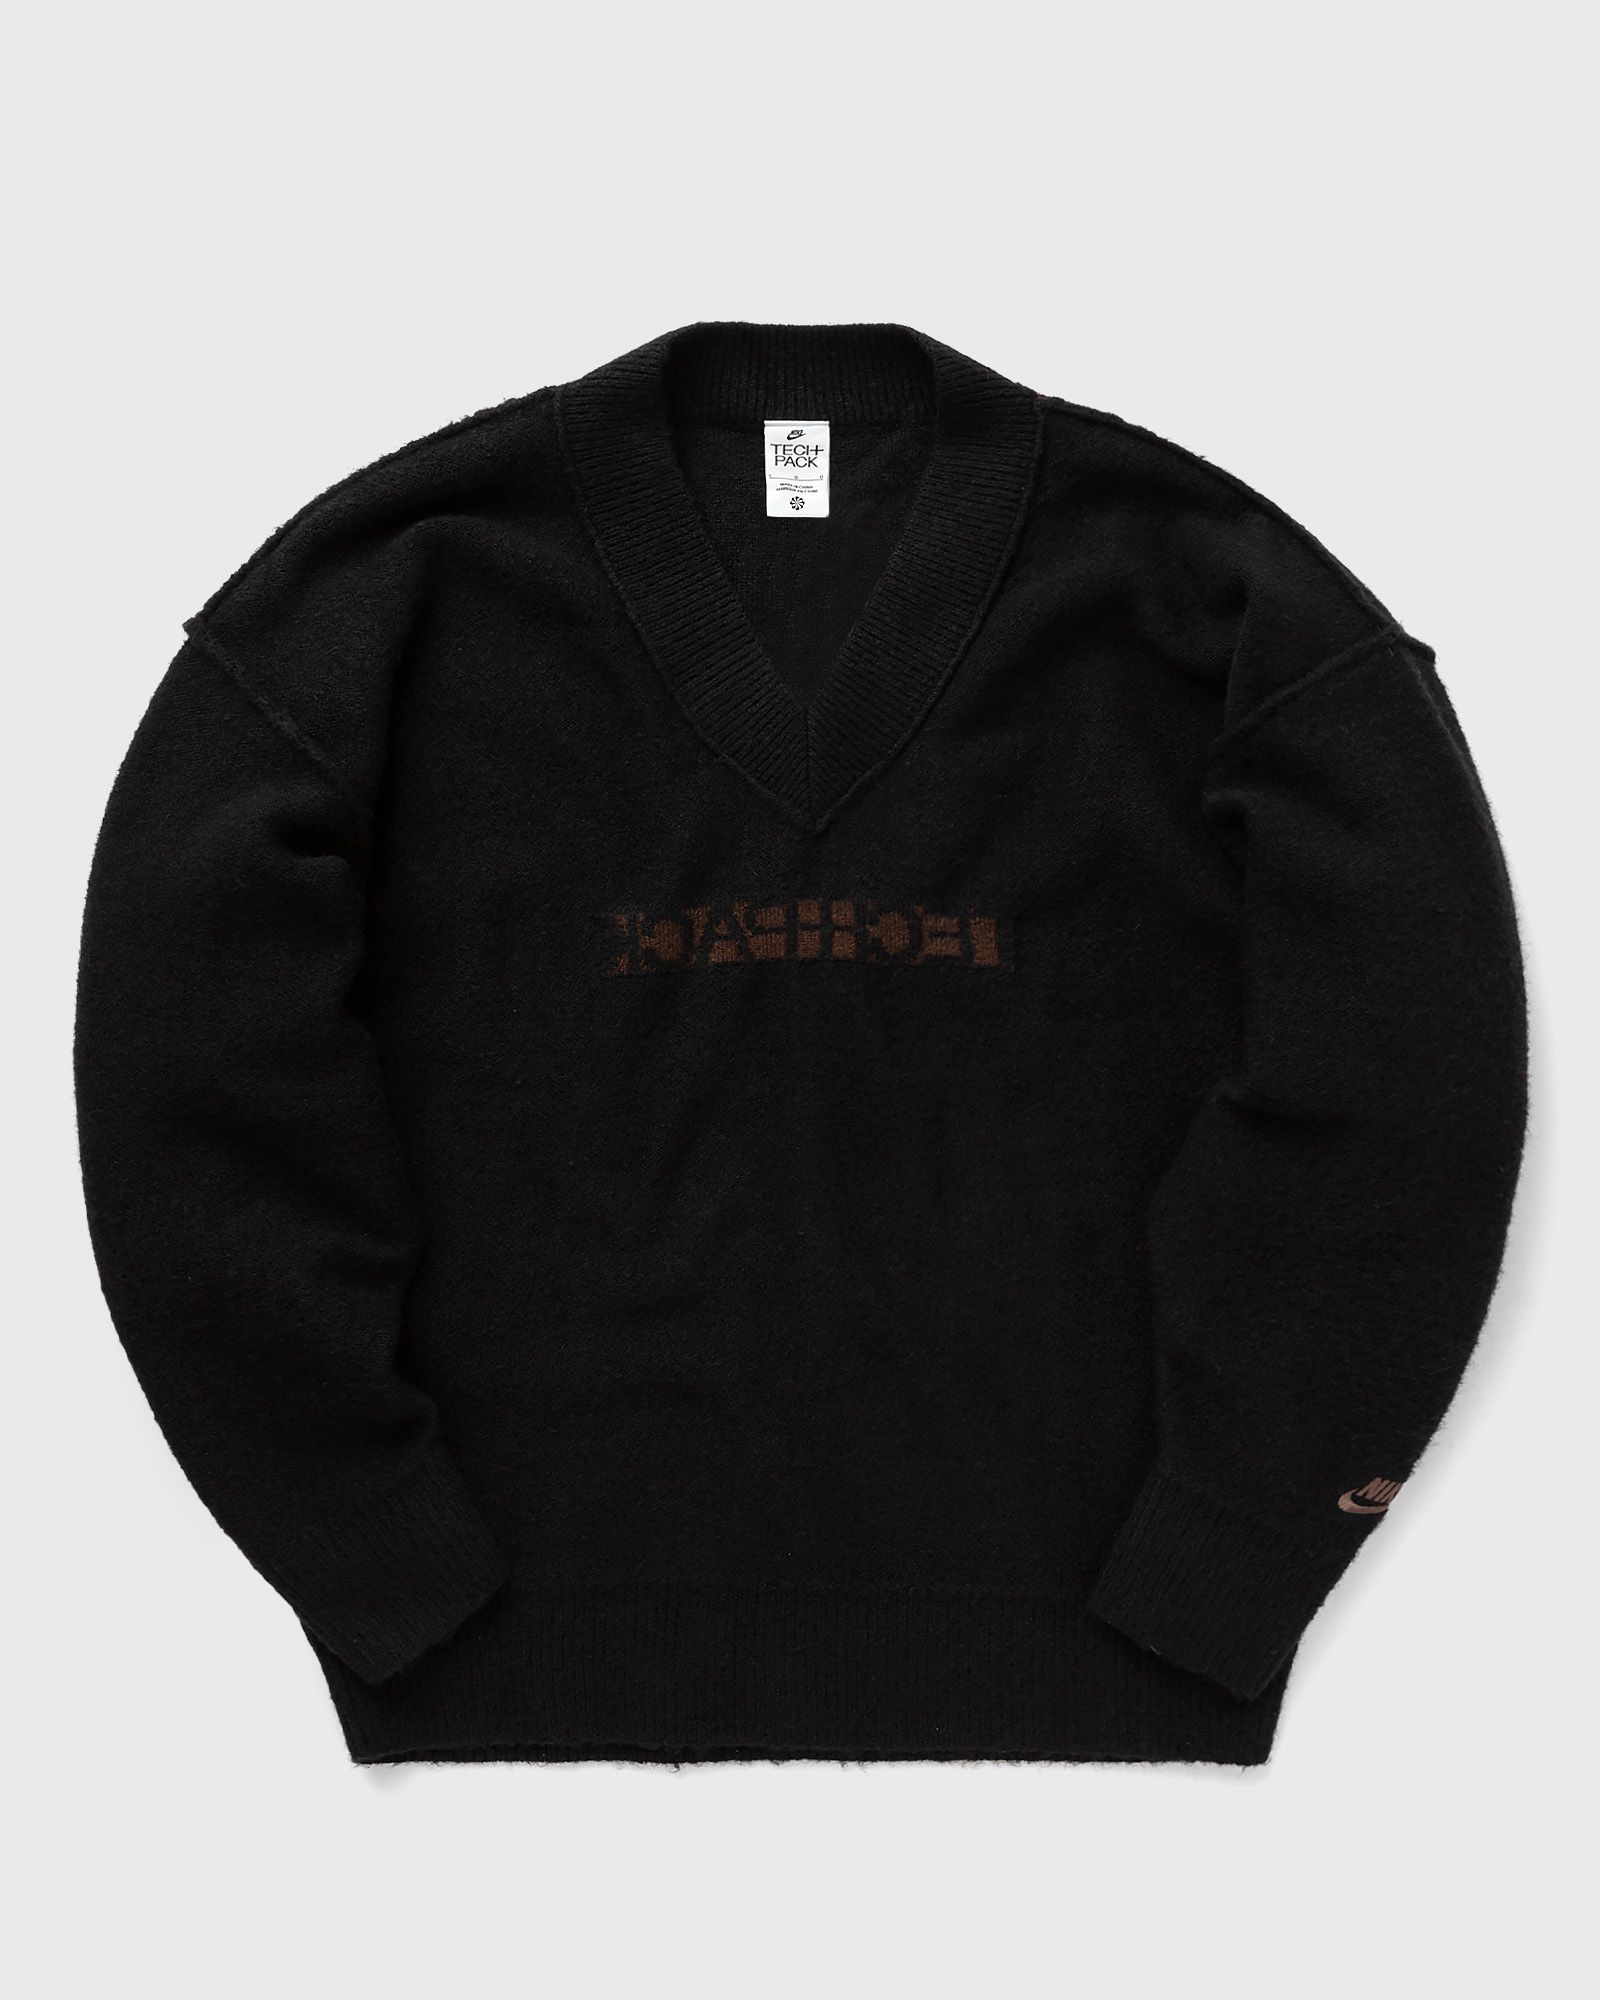 Nike - sportswear tech pack men's engineered knit sweater men pullovers black in größe:xl